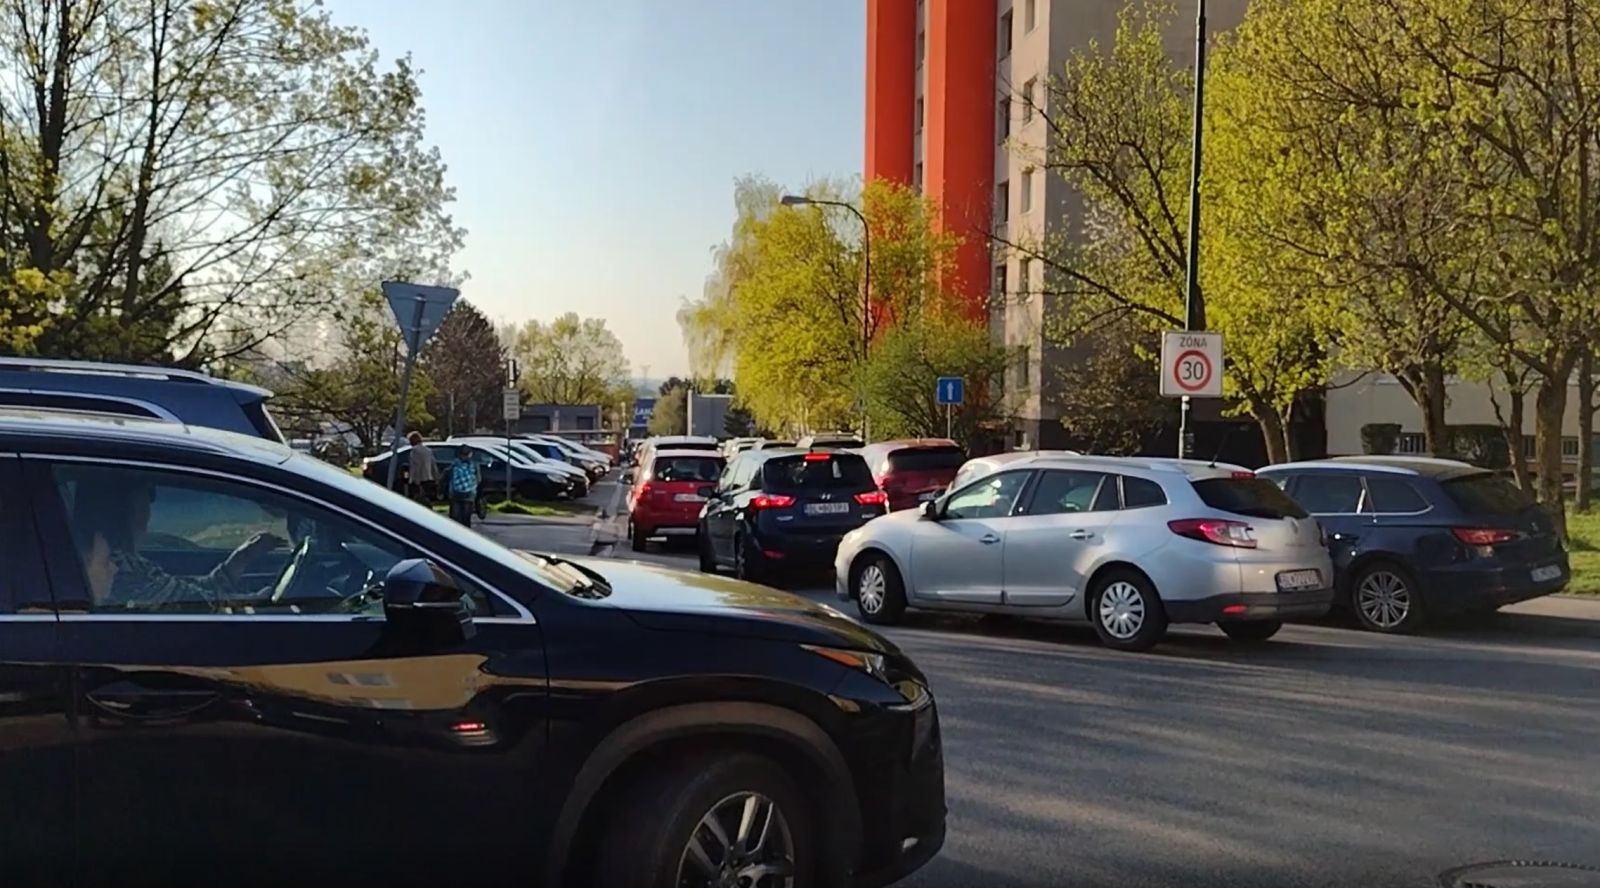 Dopravná situácia ráno na Tbiliskej. Zdroj: Metropolitný inštitút Bratislavy